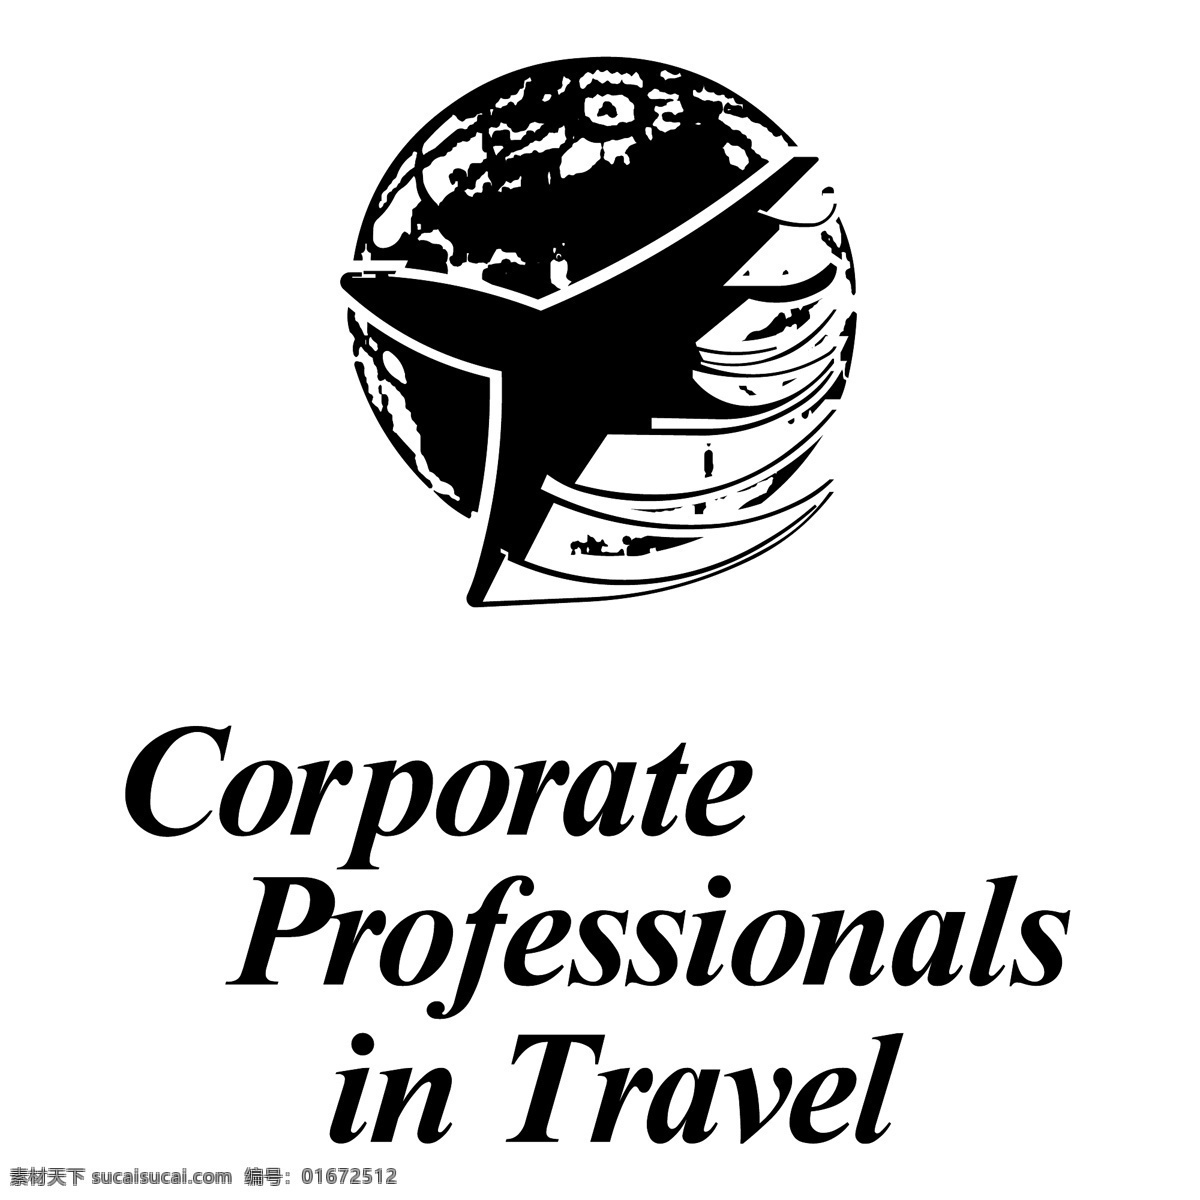 旅游公司 专业人员 旅游 标志 自由 企业 专业 人士 公司 免费 psd源文件 logo设计